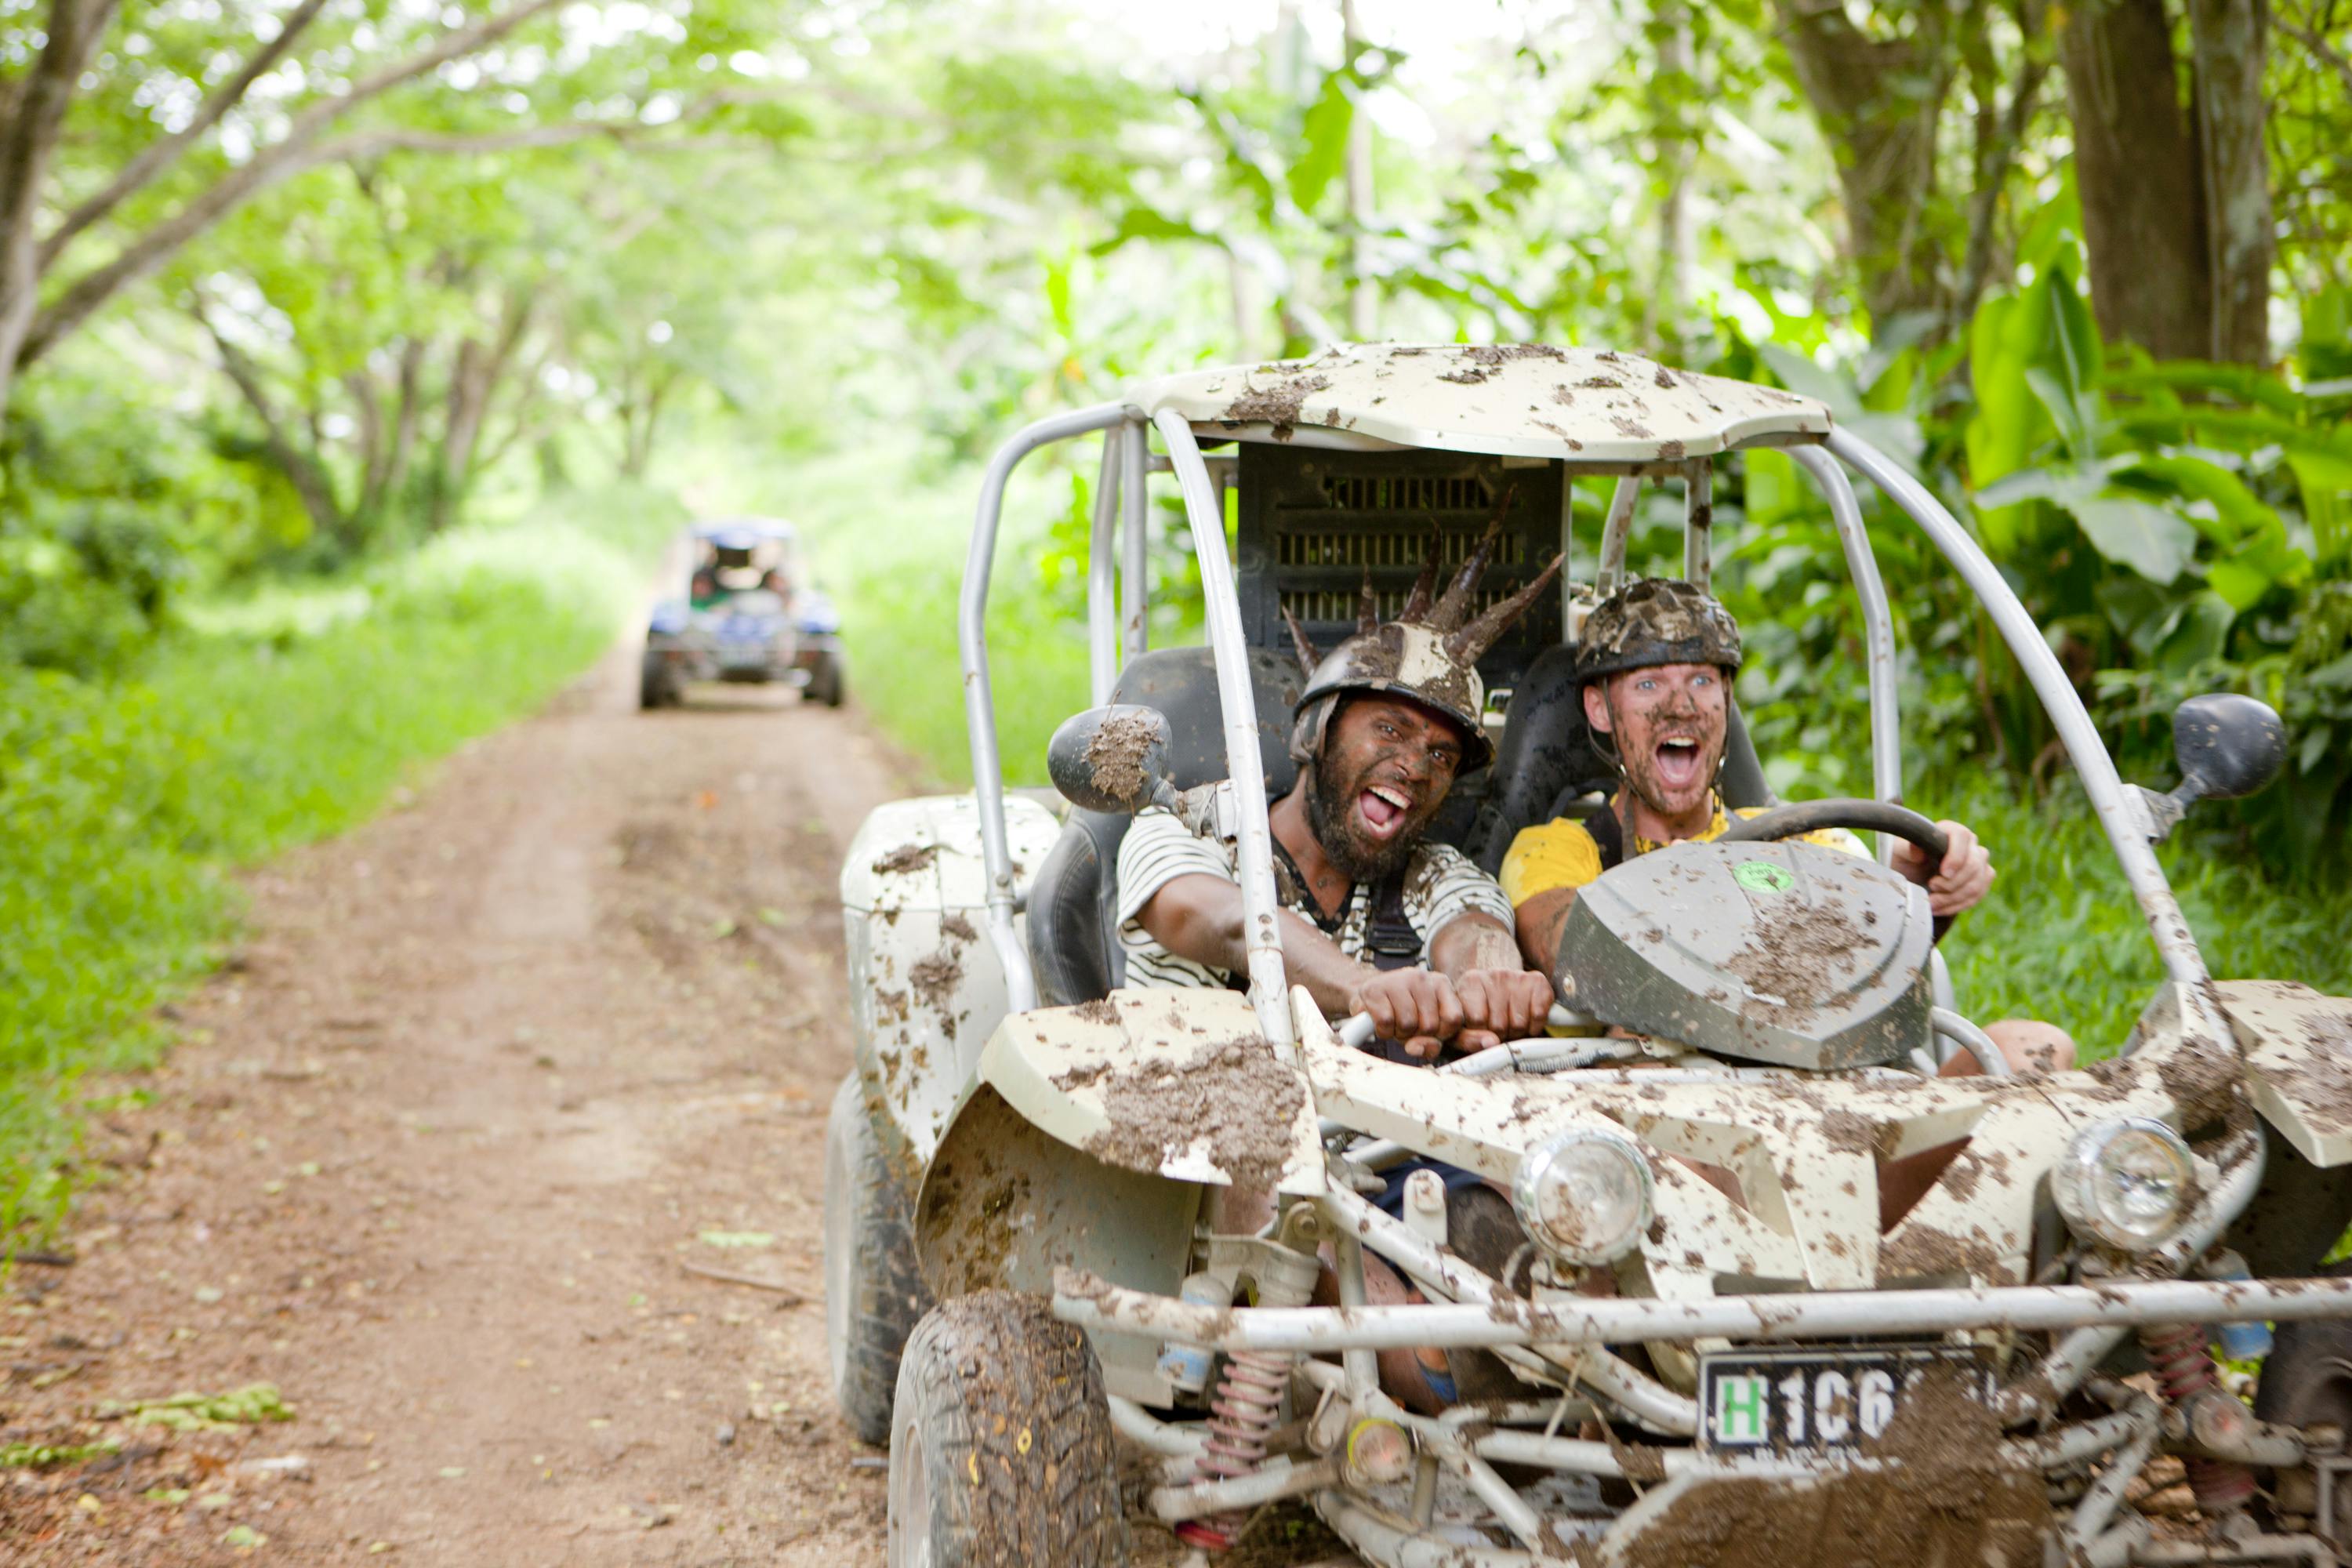 Buggy Adventures #toursvanutau #erakorislandresort Vanuatu tourism